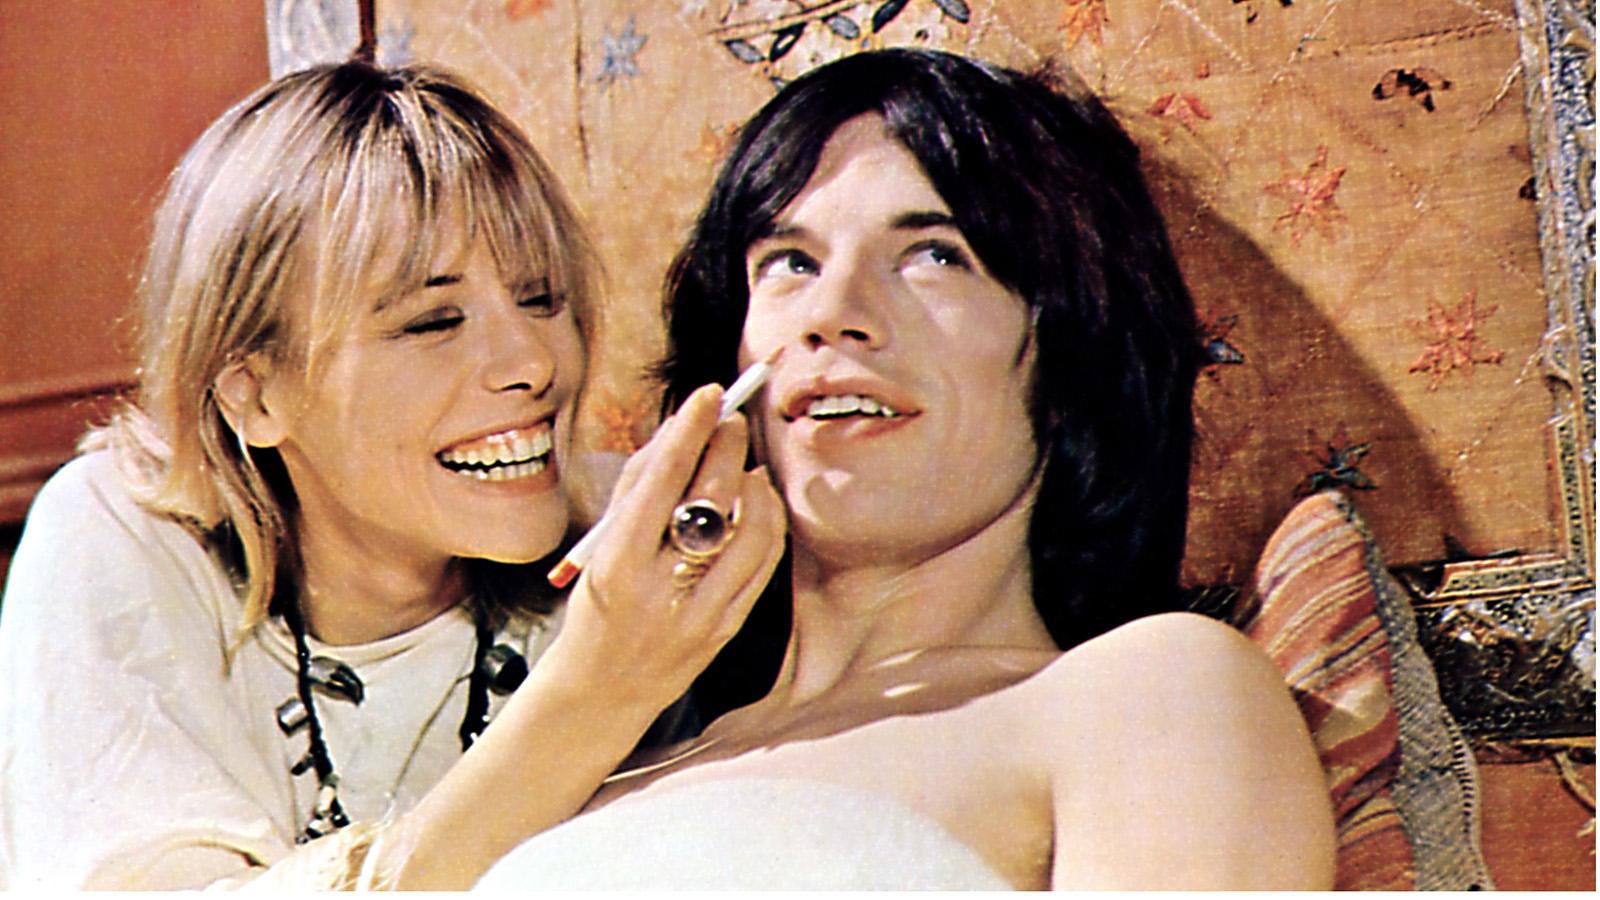 Anita Pallenberg och Mick Jagger i filmen ”Performance”.